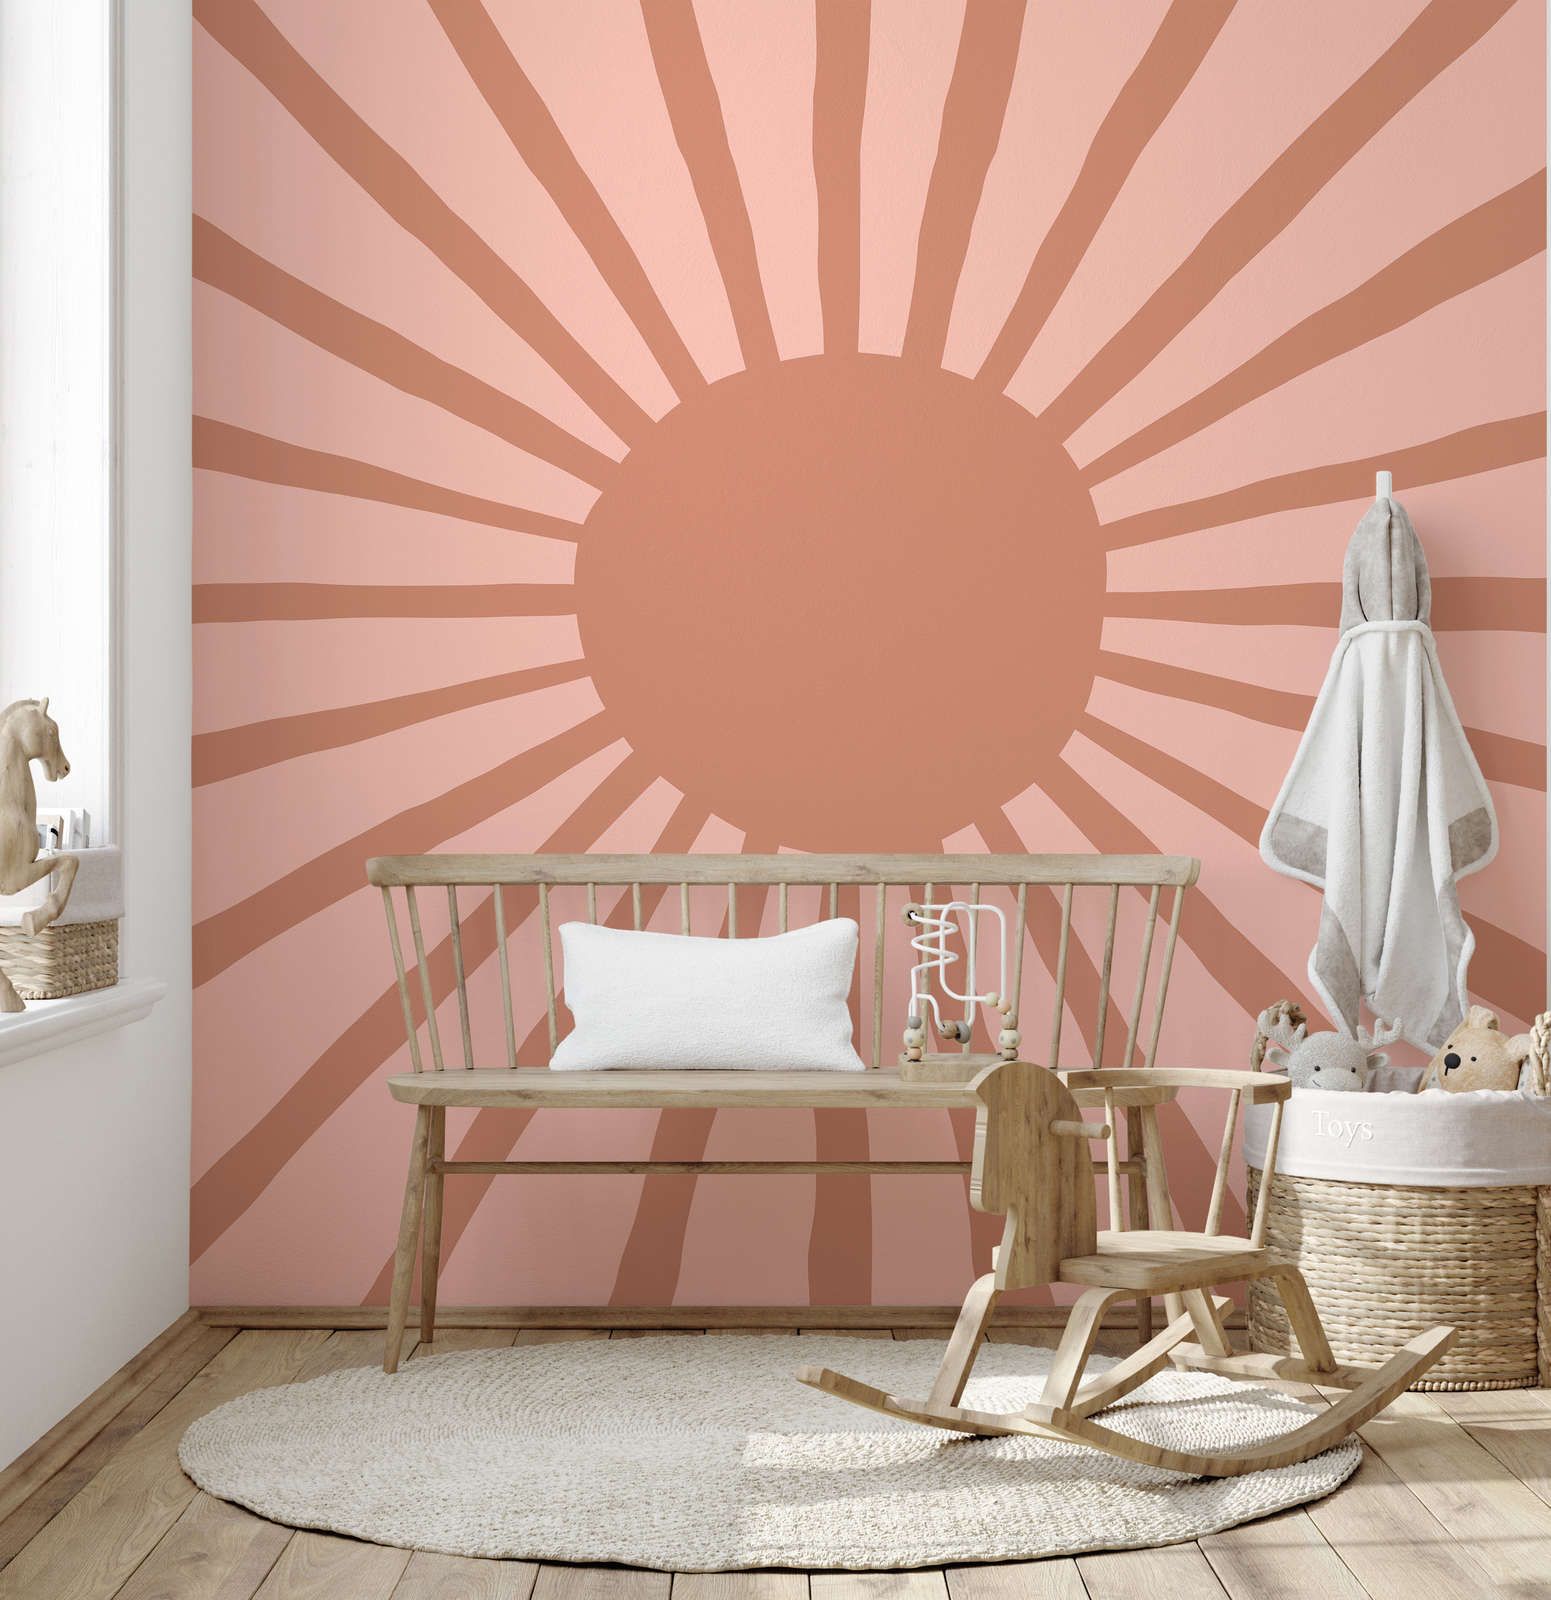             Onderlaag behang met geverfde abstracte zon - glad & mat vlies
        